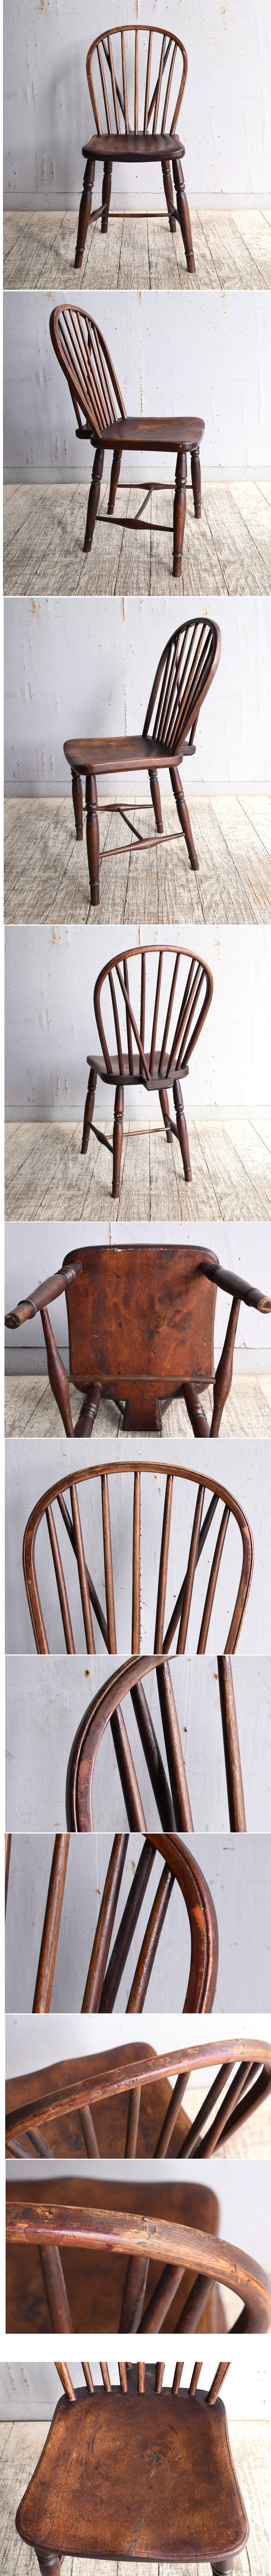 イギリス アンティーク家具 キッチンチェア 椅子 10411